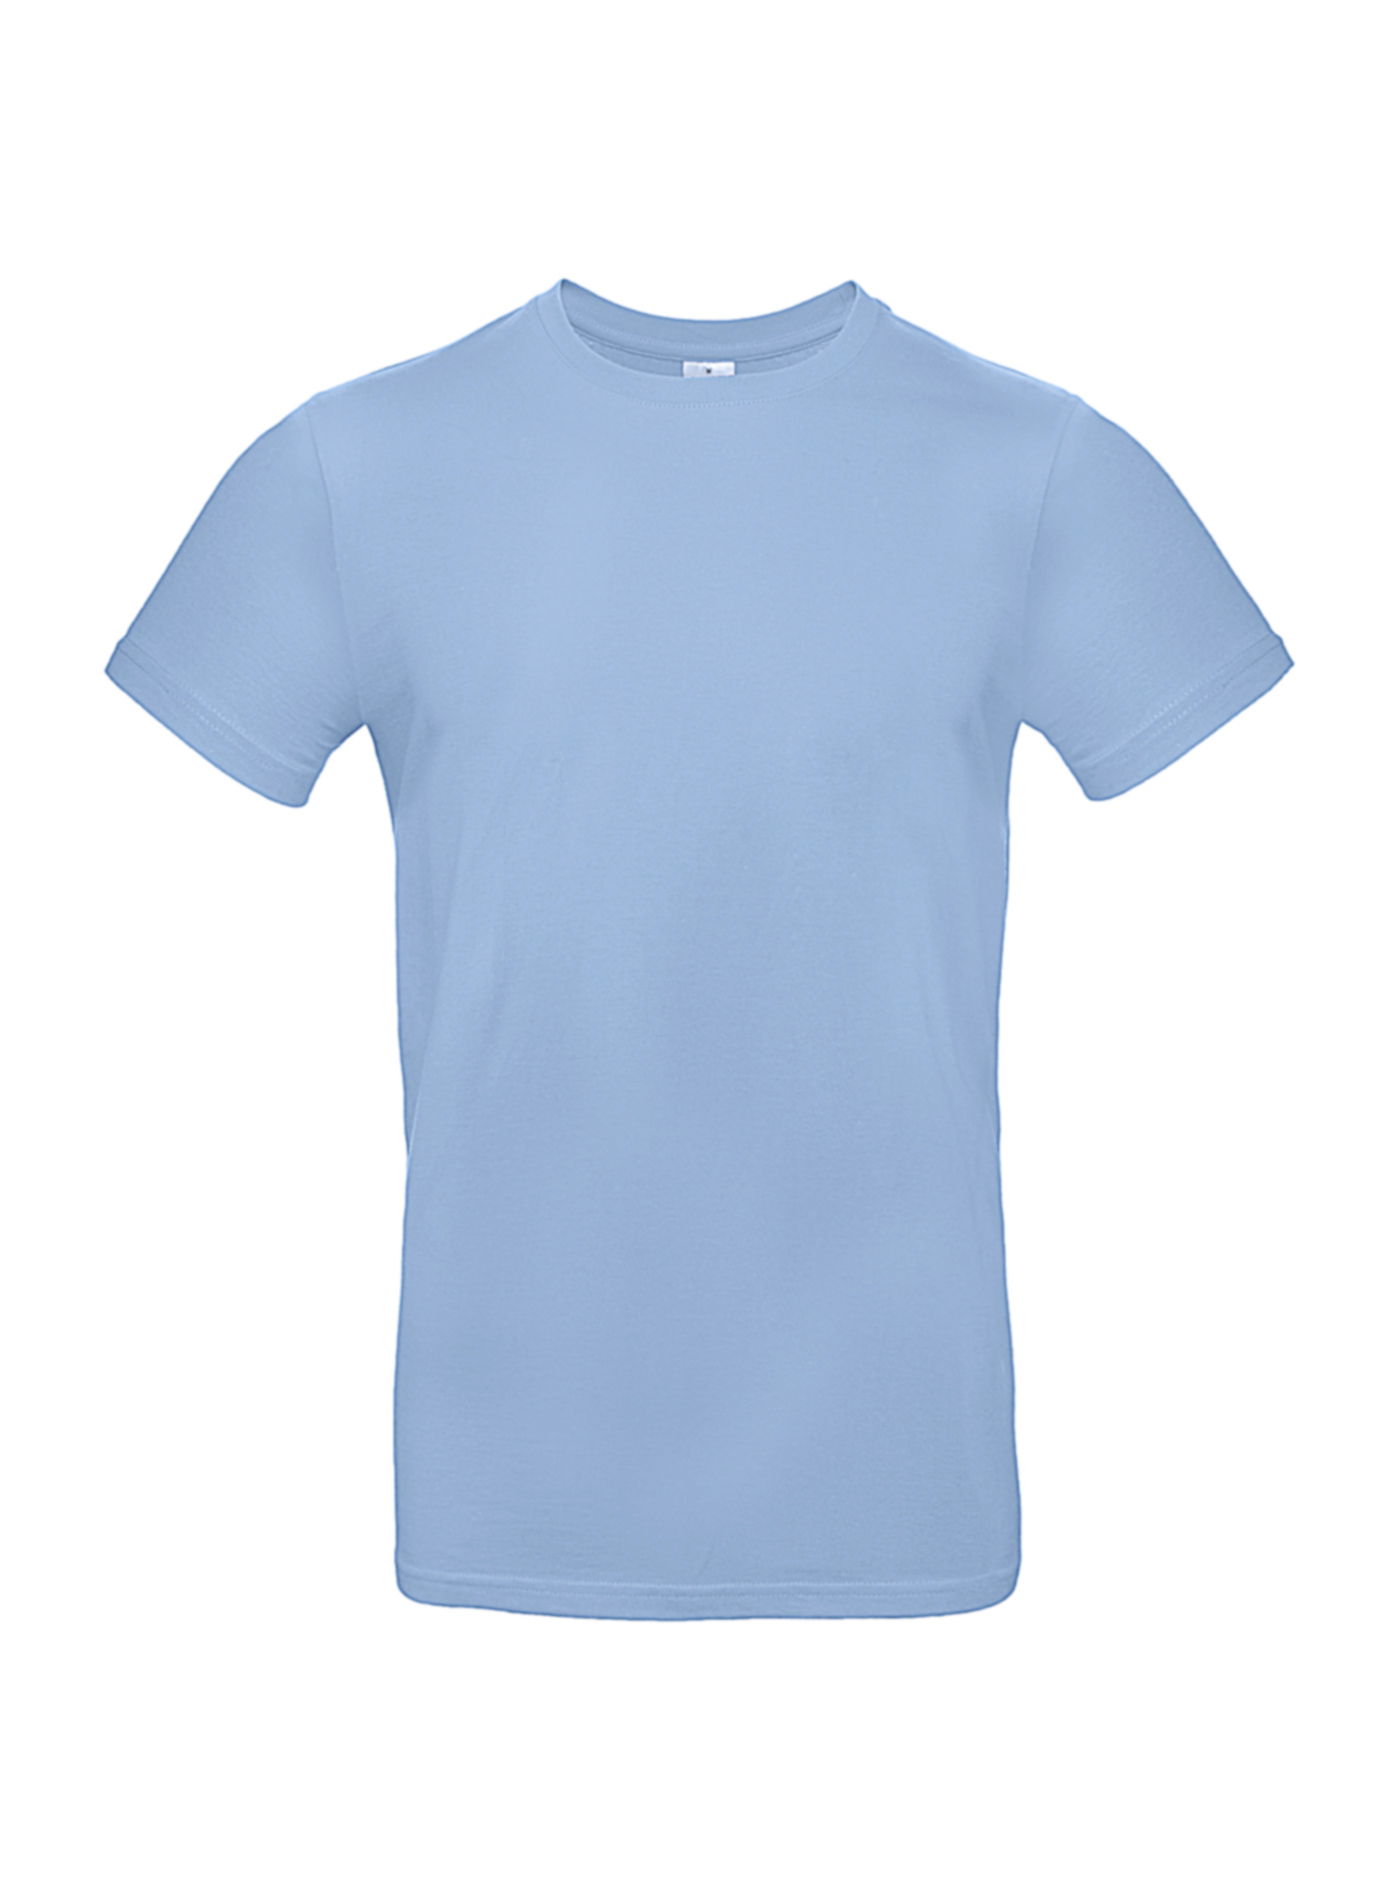 Silnější bavlněné pánské tričko - Blankytně modrá L